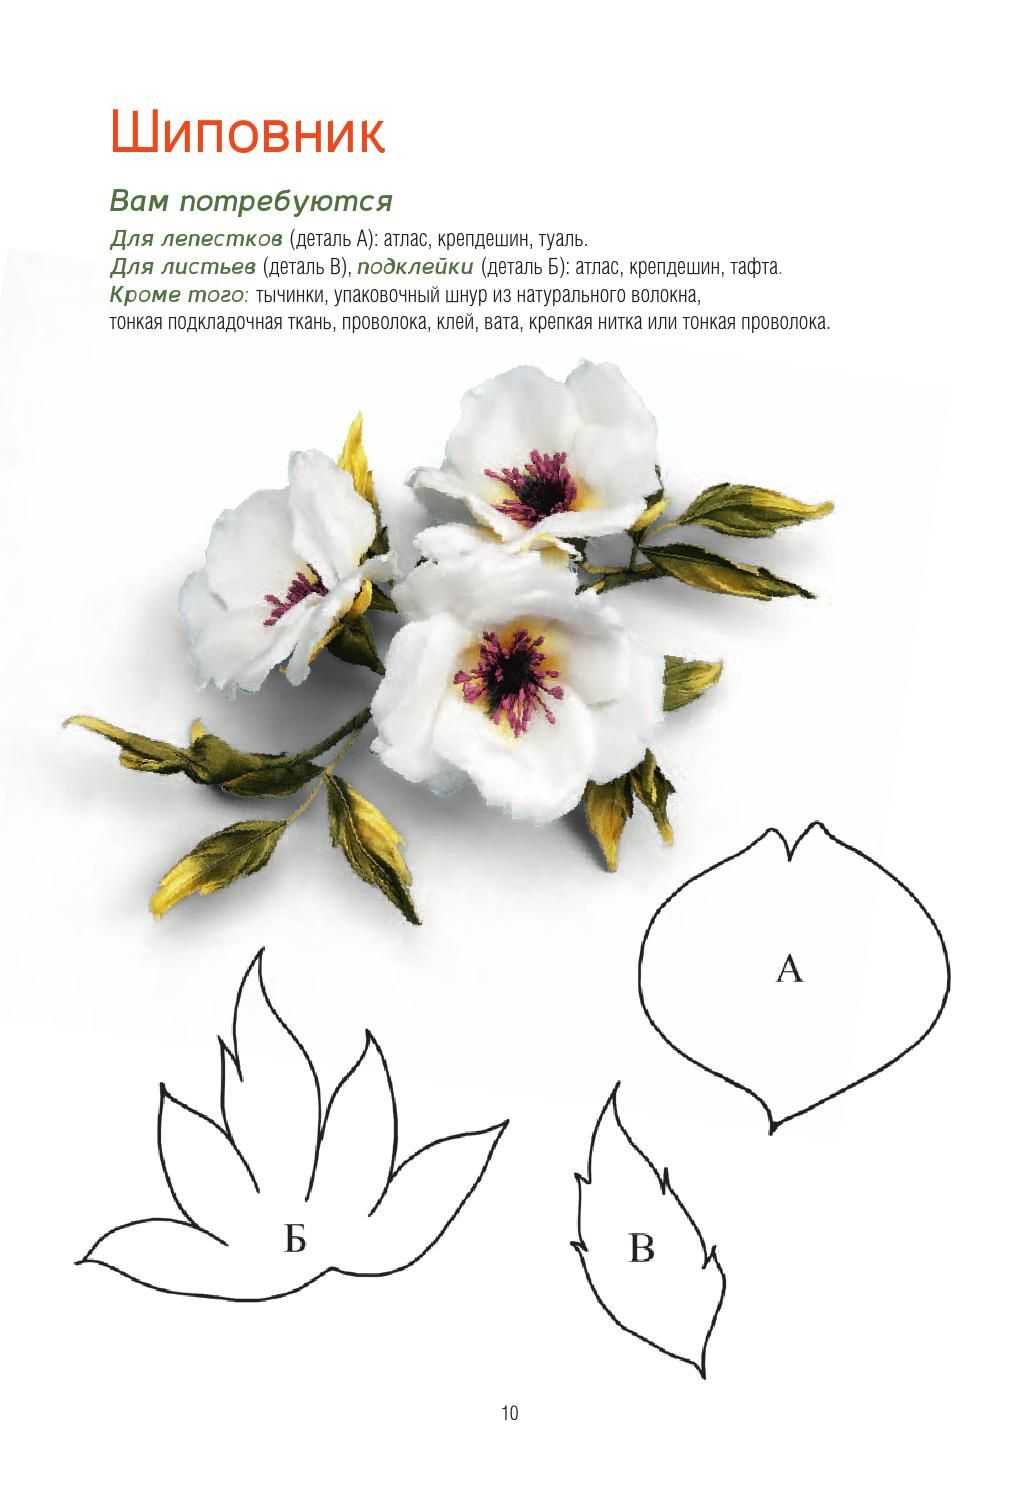 Цветы из фоамирана своими руками: мастер класс. как делать из фоамирана цветы: розу, ромашку, орхидею, лилию, пион, цветы яблони, полевые?